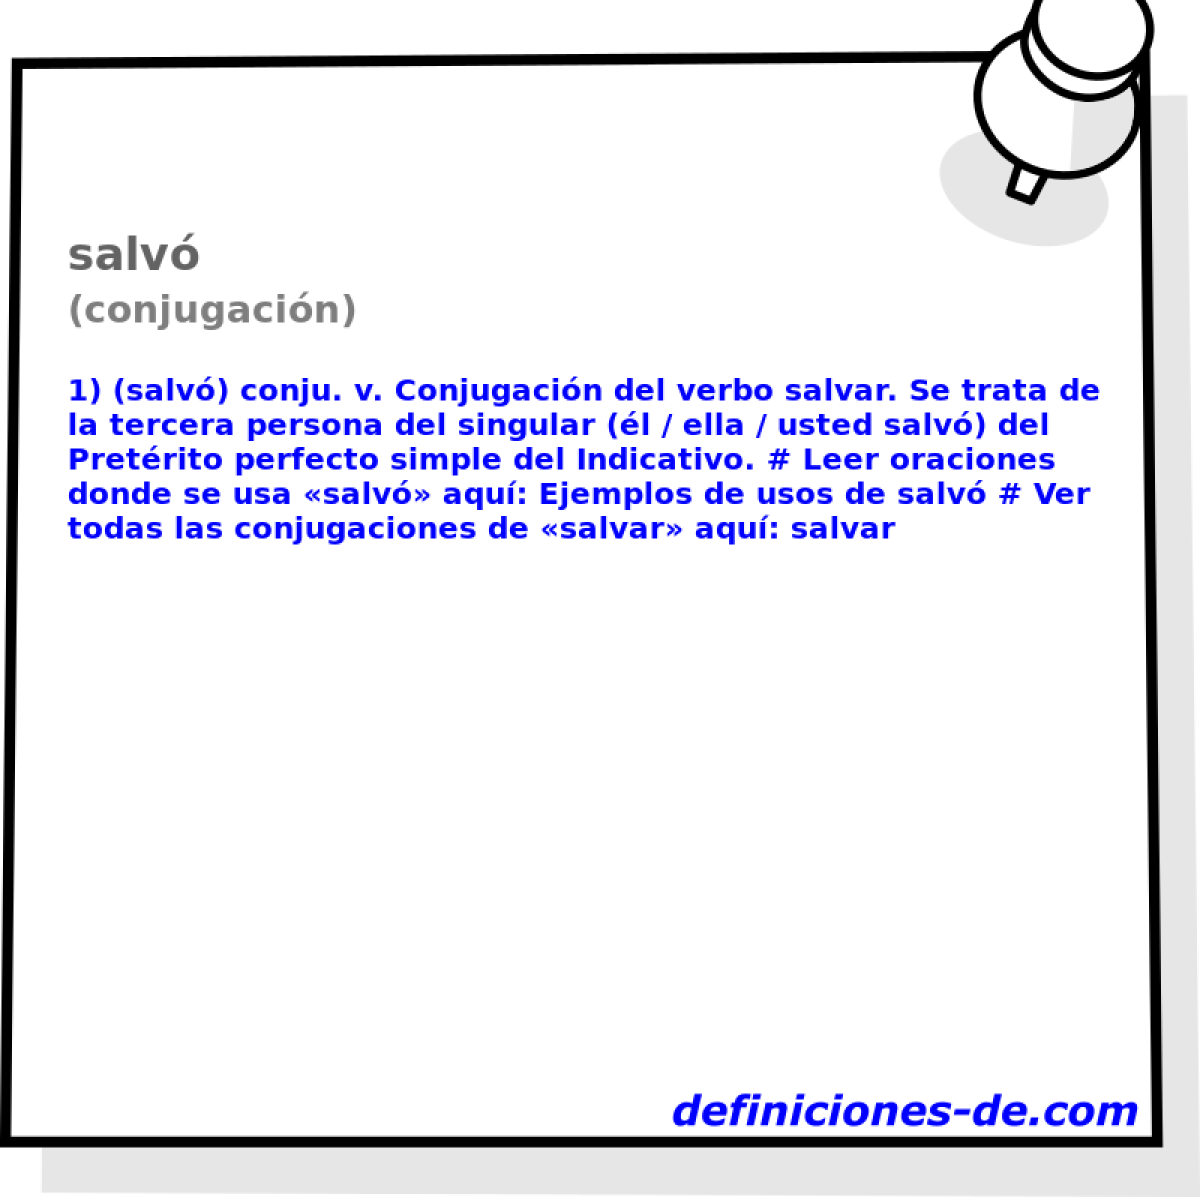 salv (conjugacin)